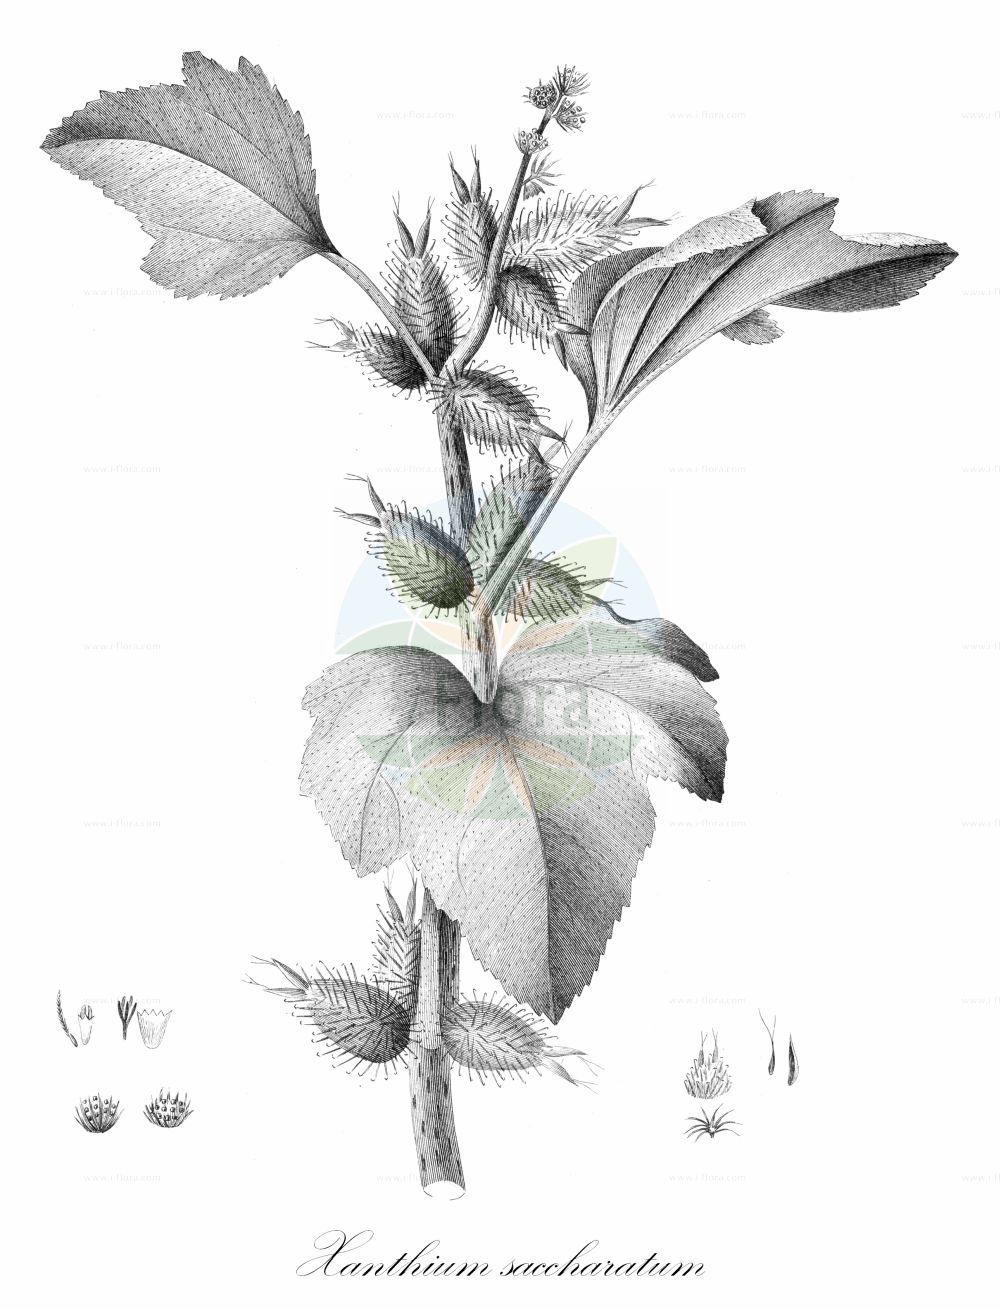 Historische Abbildung von Xanthium saccharatum (Zucker-Spitzklette - Sucrate Cocklebur). Das Bild zeigt Blatt, Bluete, Frucht und Same. ---- Historical Drawing of Xanthium saccharatum (Zucker-Spitzklette - Sucrate Cocklebur). The image is showing leaf, flower, fruit and seed.(Xanthium saccharatum,Zucker-Spitzklette,Sucrate Cocklebur,Zucker-Spitzklette,Sucrate Cocklebur,Xanthium,Spitzklette,Cocklebur,Asteraceae,Korbblütengewächse,Daisy family,Blatt,Bluete,Frucht,Same,leaf,flower,fruit,seed)